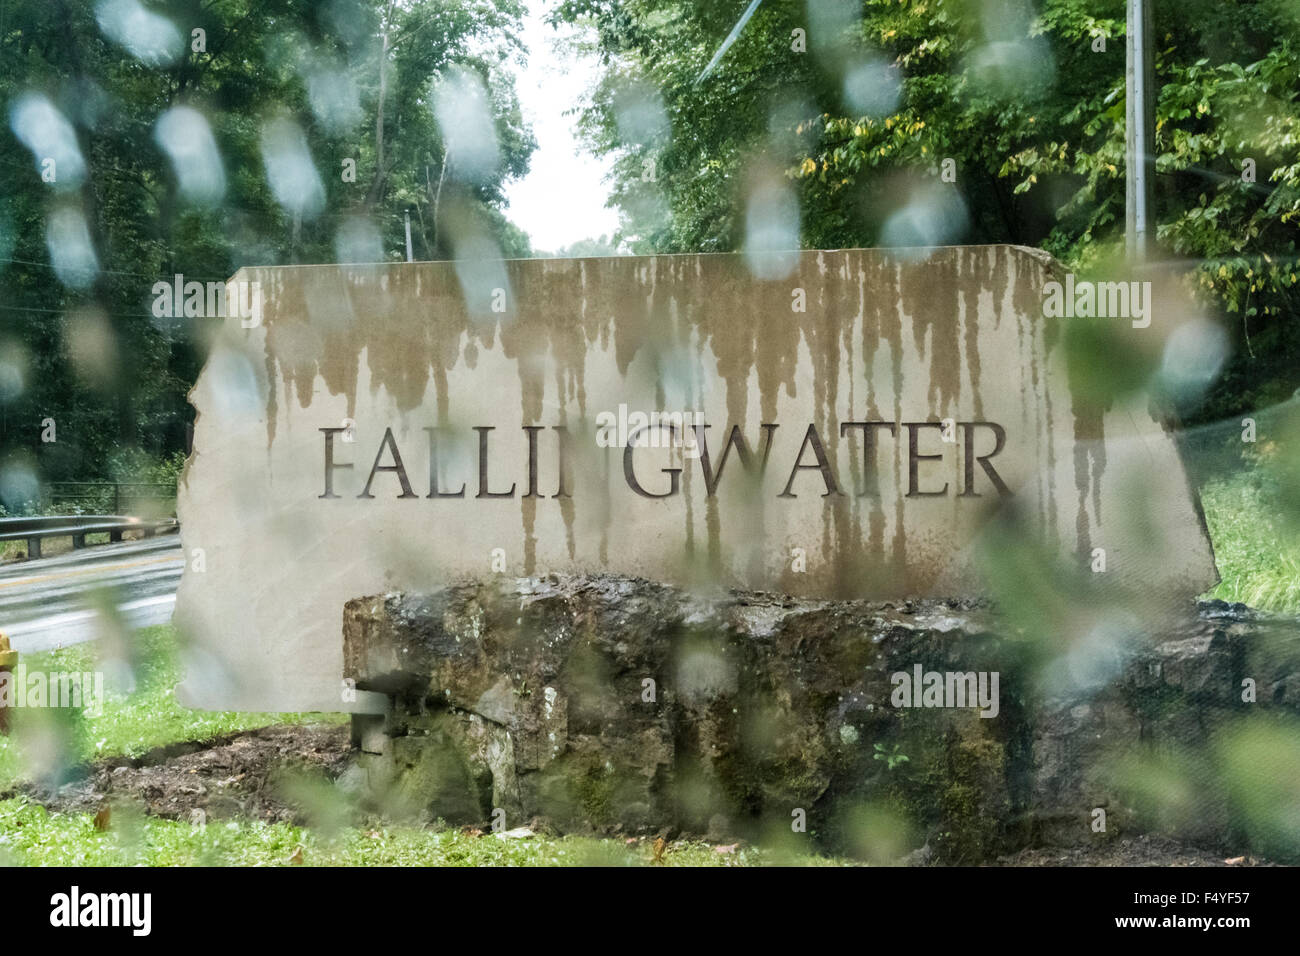 Fallingwater strada segno in pioggia. Casa Villa caduta acqua divertente segnaletica stradale. Foto Stock